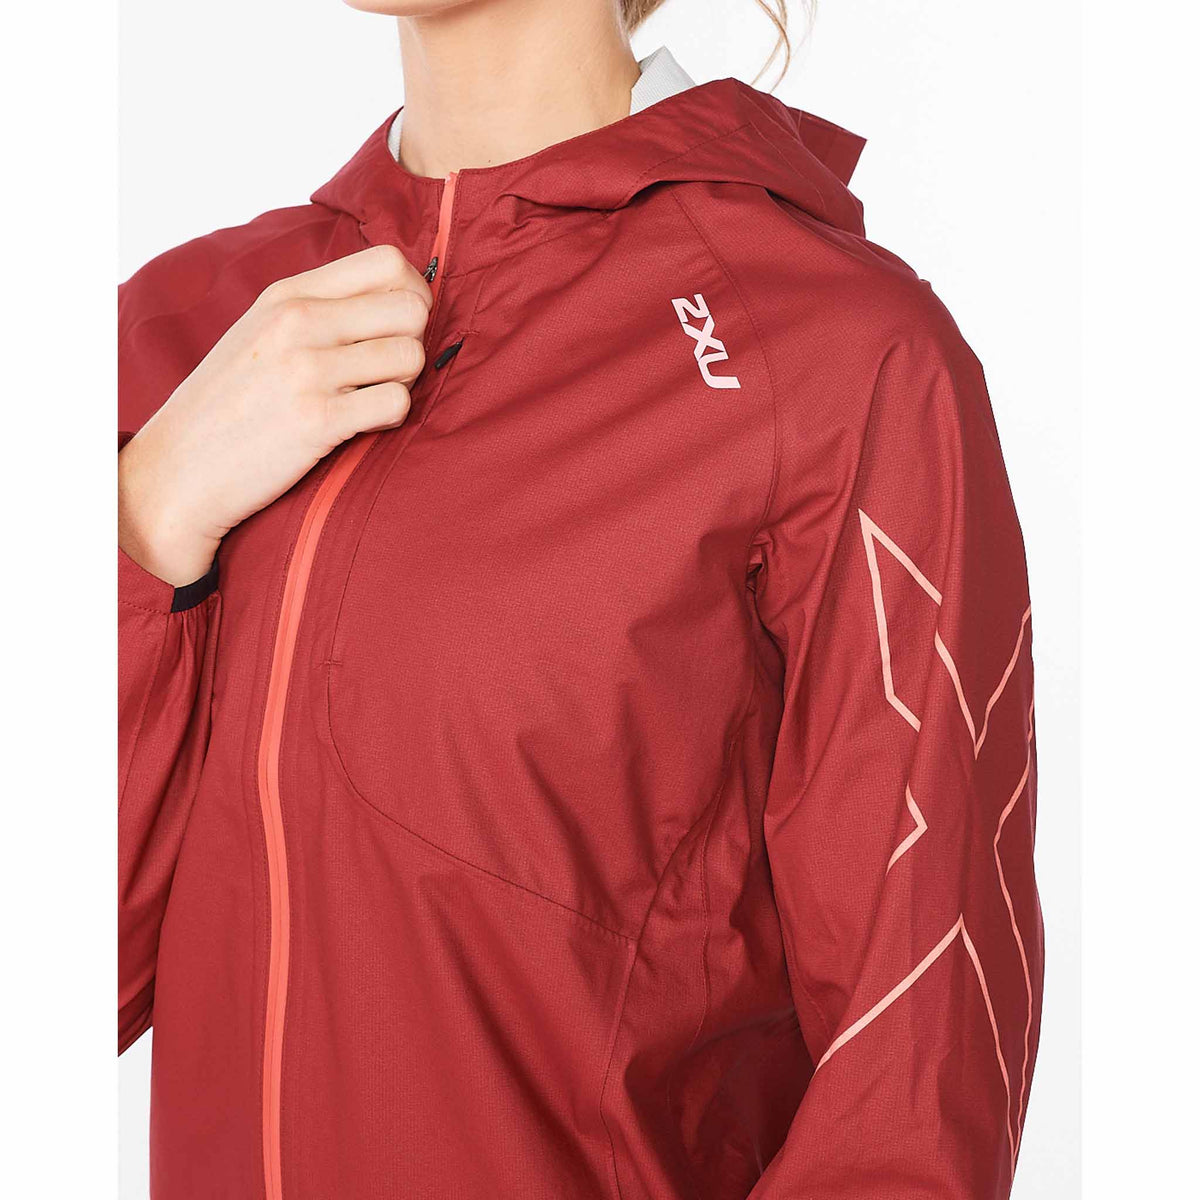 2XU Manteau imperméable Light Speed WP Jacket pour femme Cranberry/Cranberry Reflective vue de près